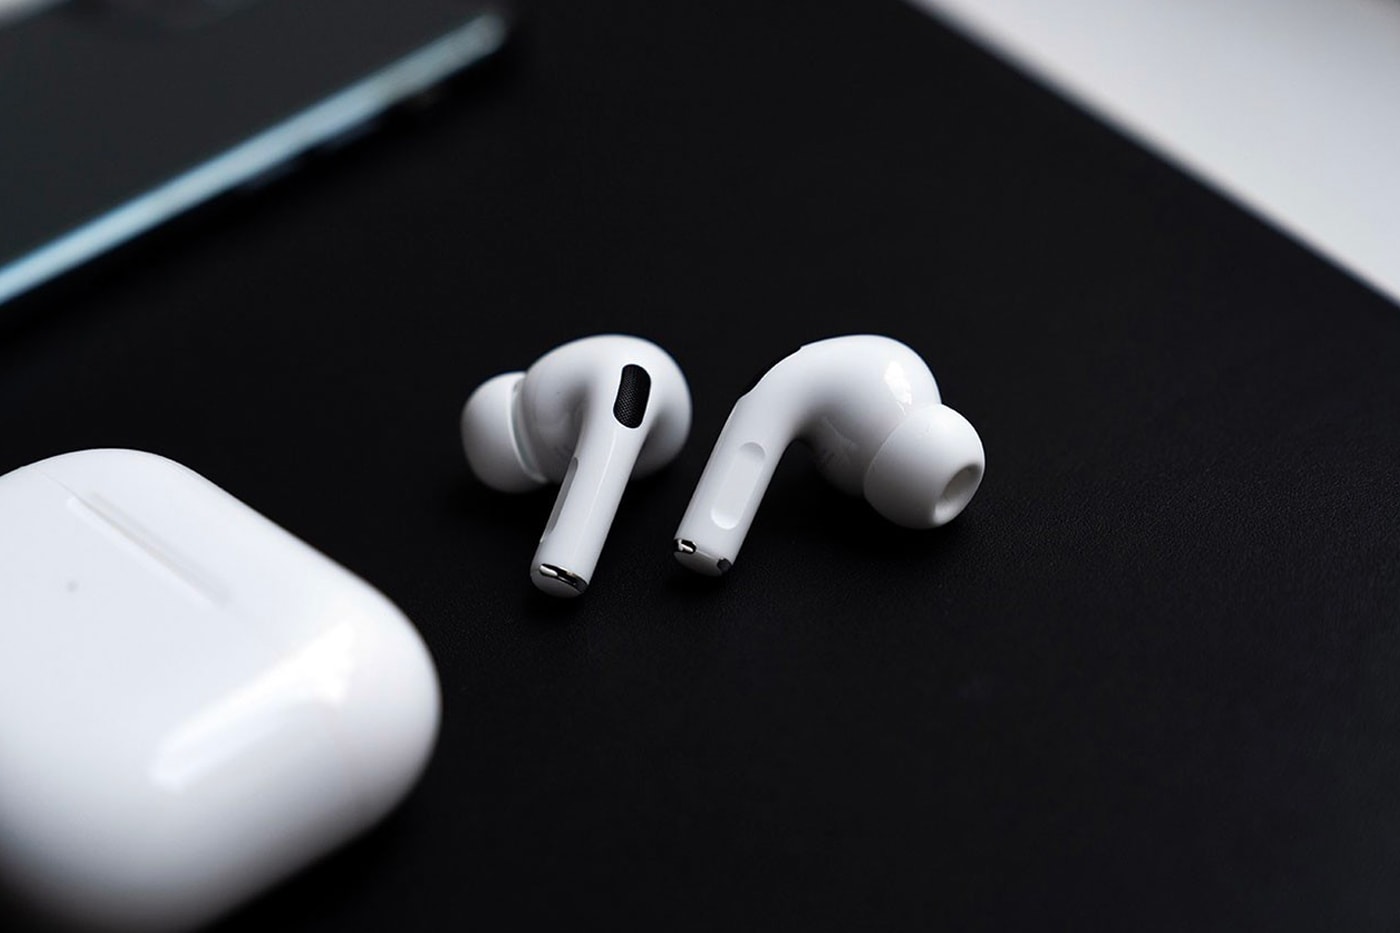 apple airpods 3 early render leaks tech apple headphones music audio earbuds renders china factory render leak prototype 